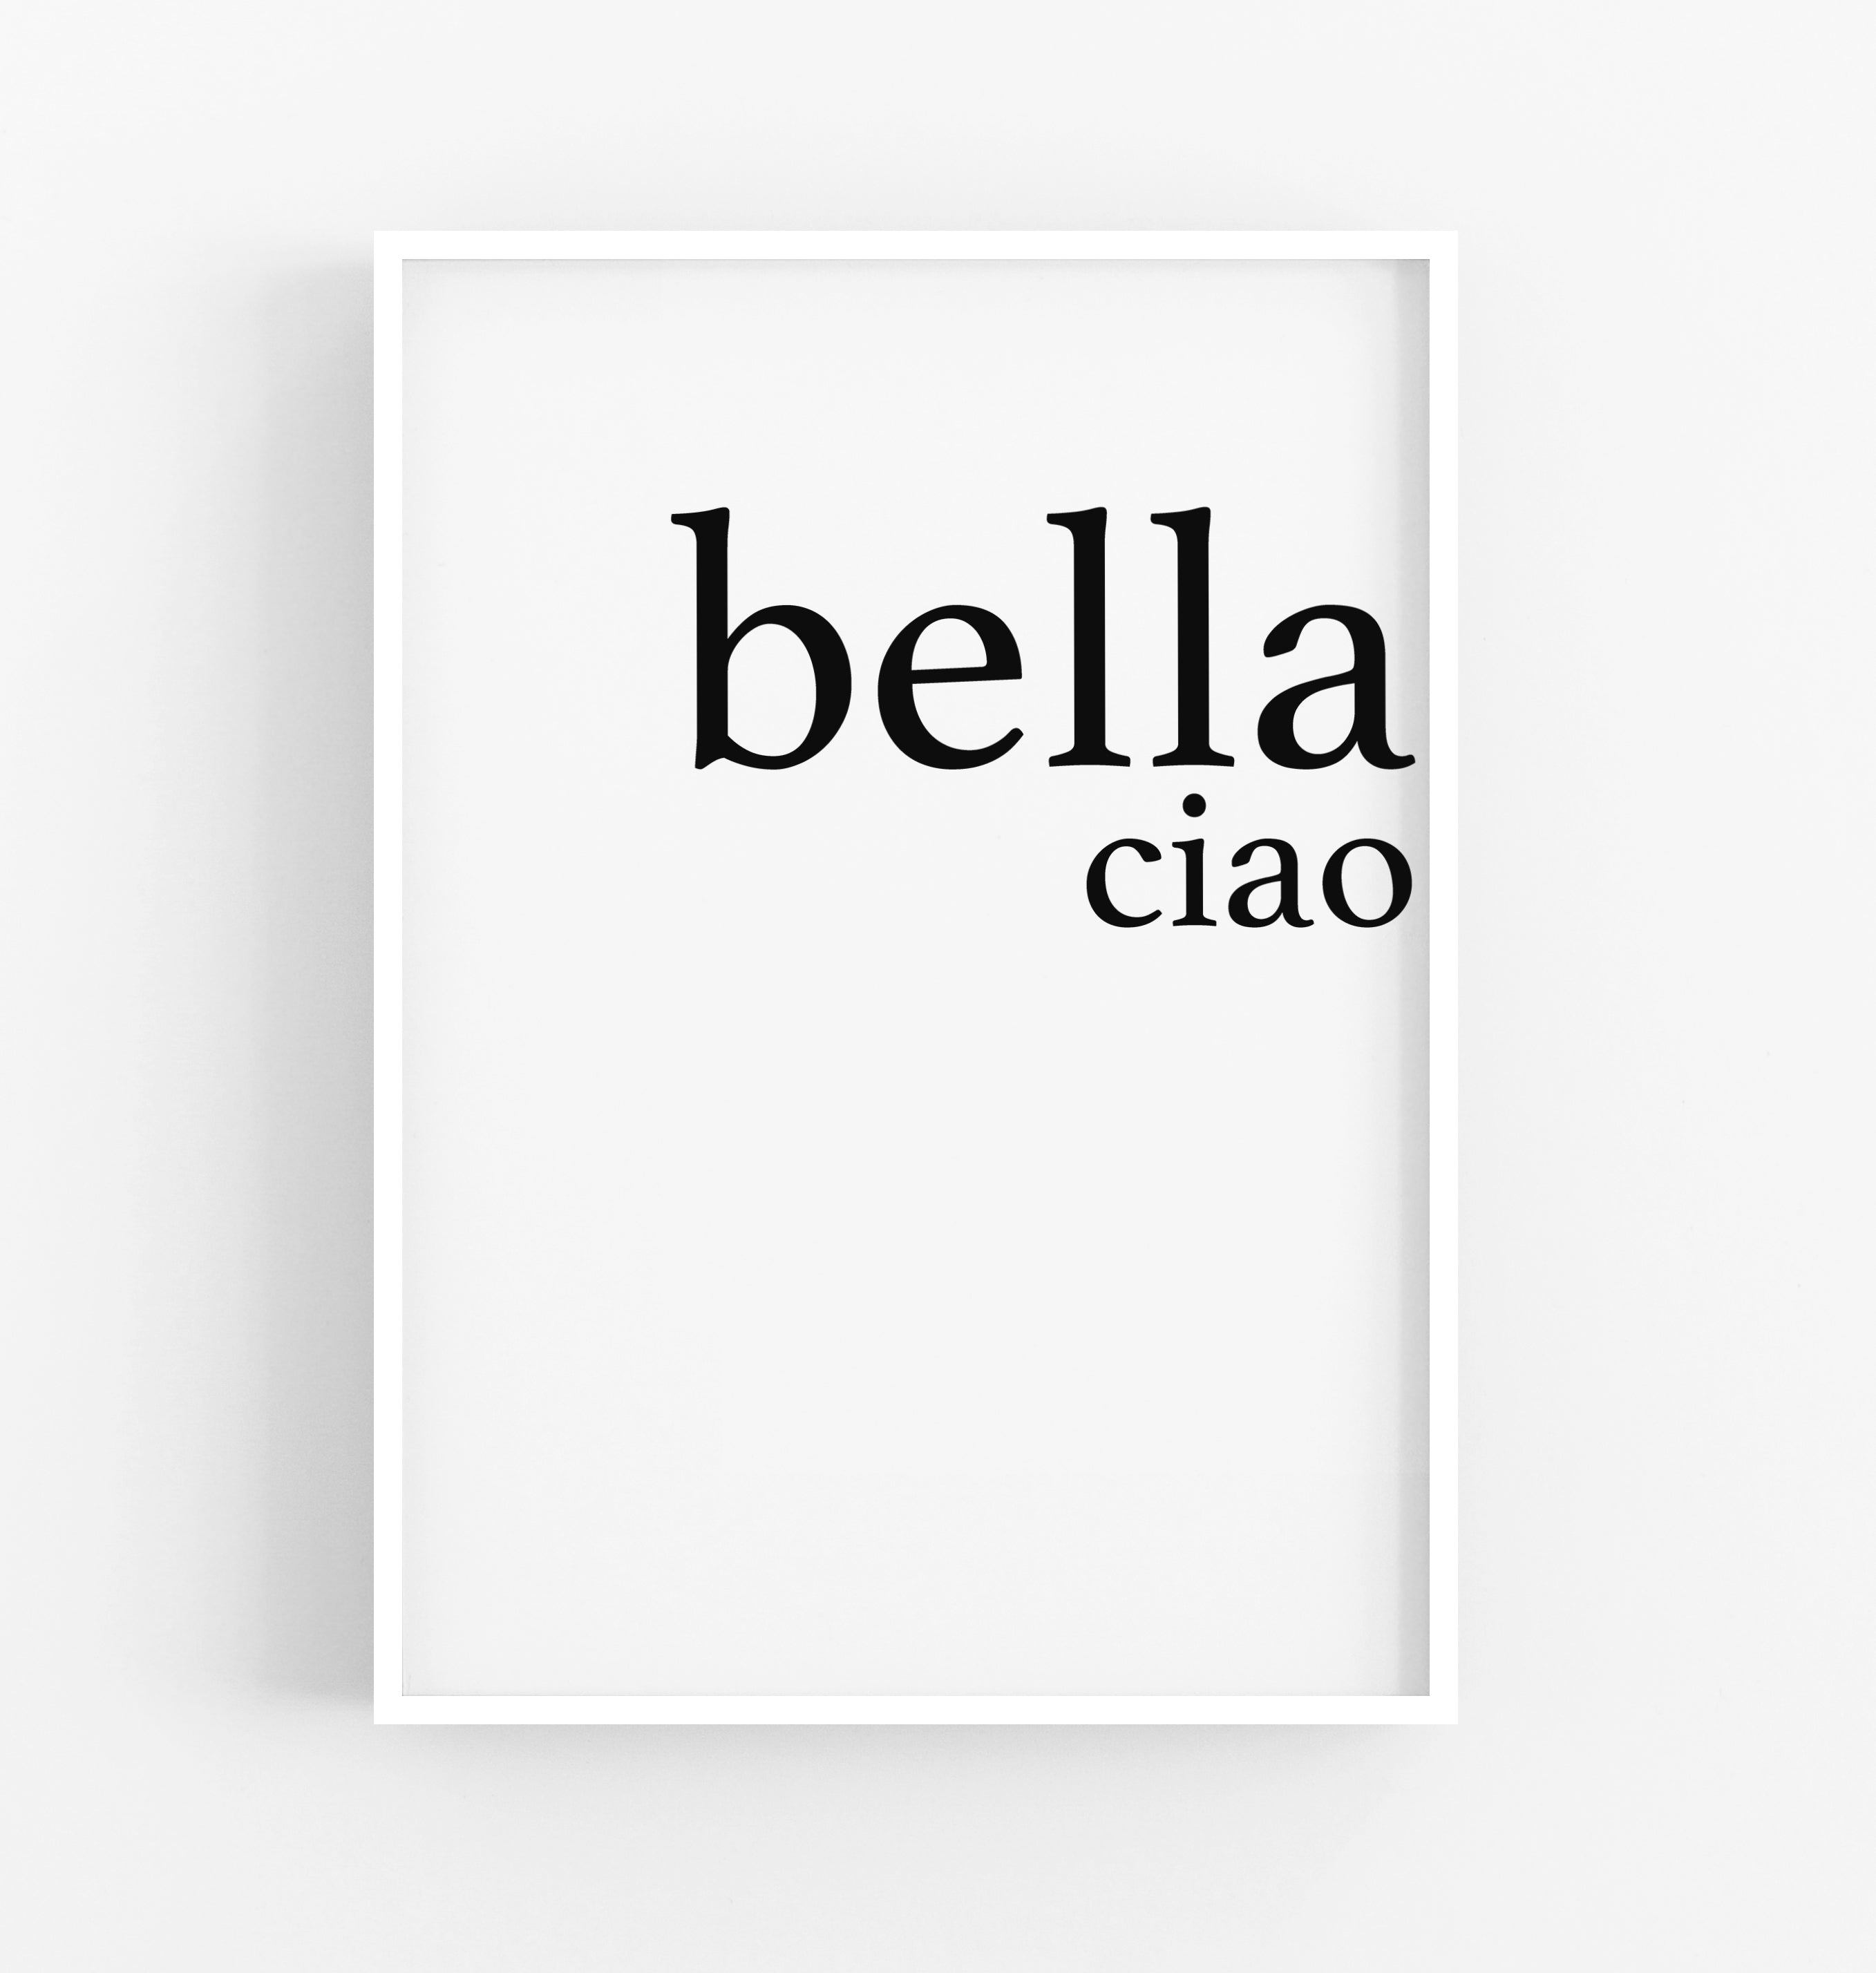 Bella ciao!